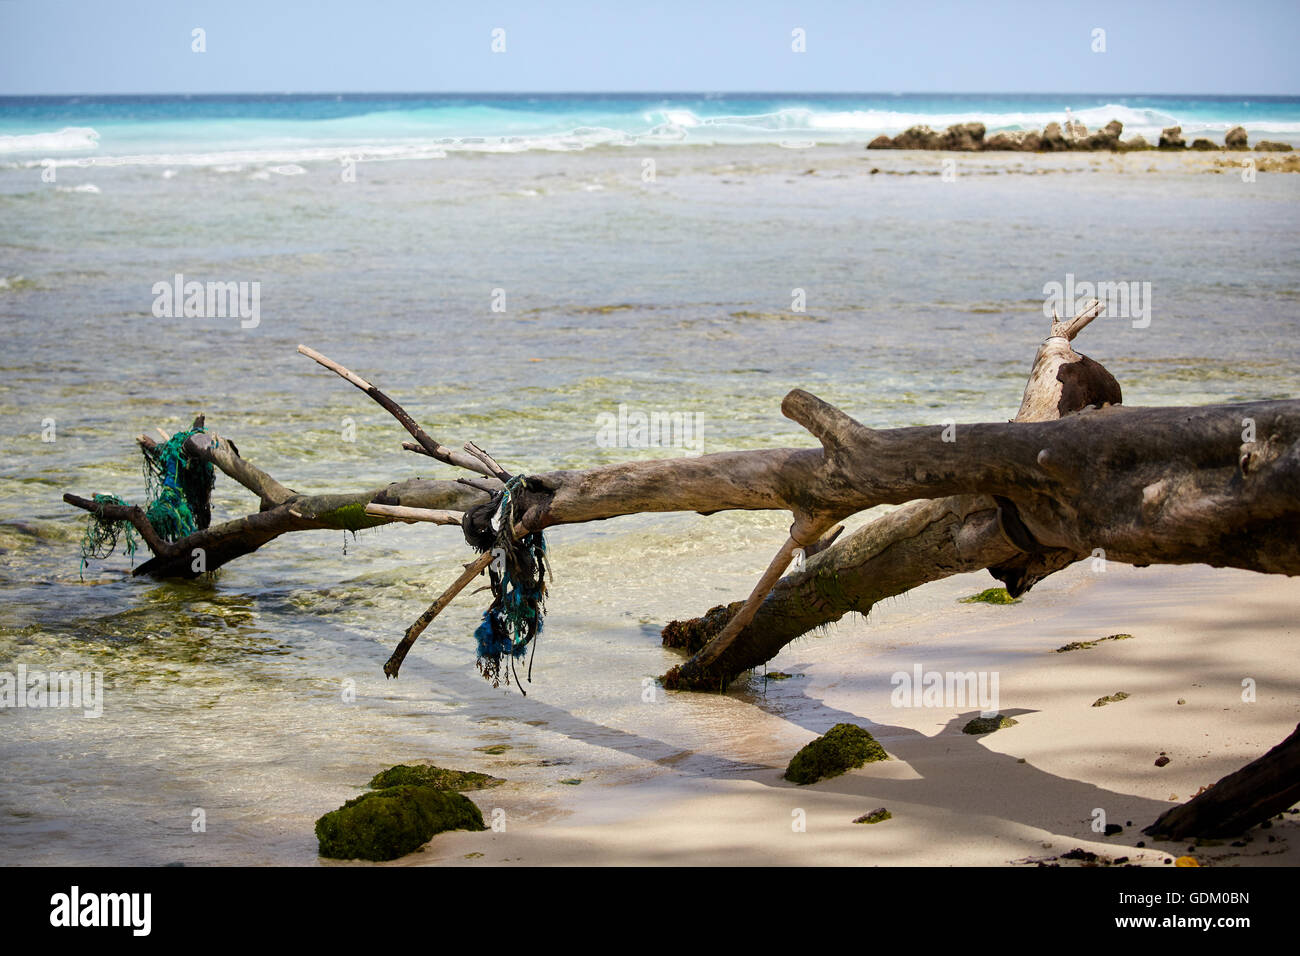 Le Piccole Antille Barbados parrocchia Saint Michael west indies capitale Bridgetown Drill Hall beach albero caduto carrello in acqua co Foto Stock